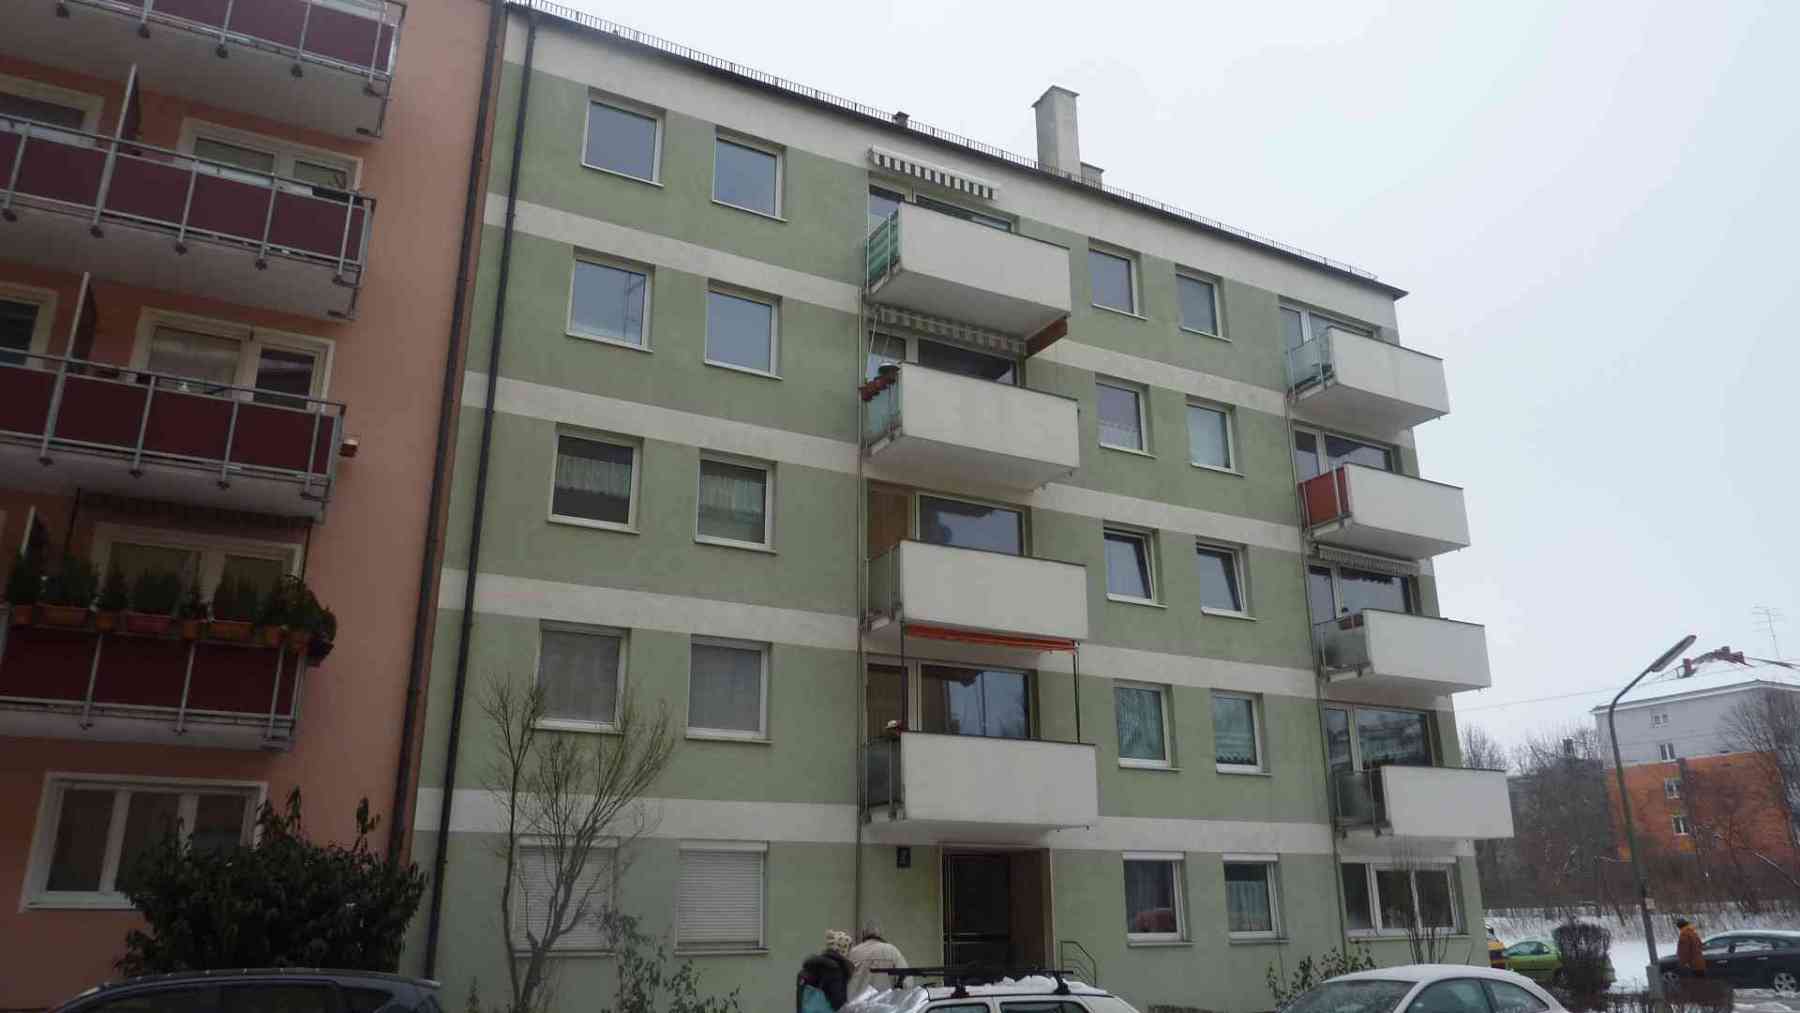 Balkon-Betoninstandsetzung-Muenchen-1